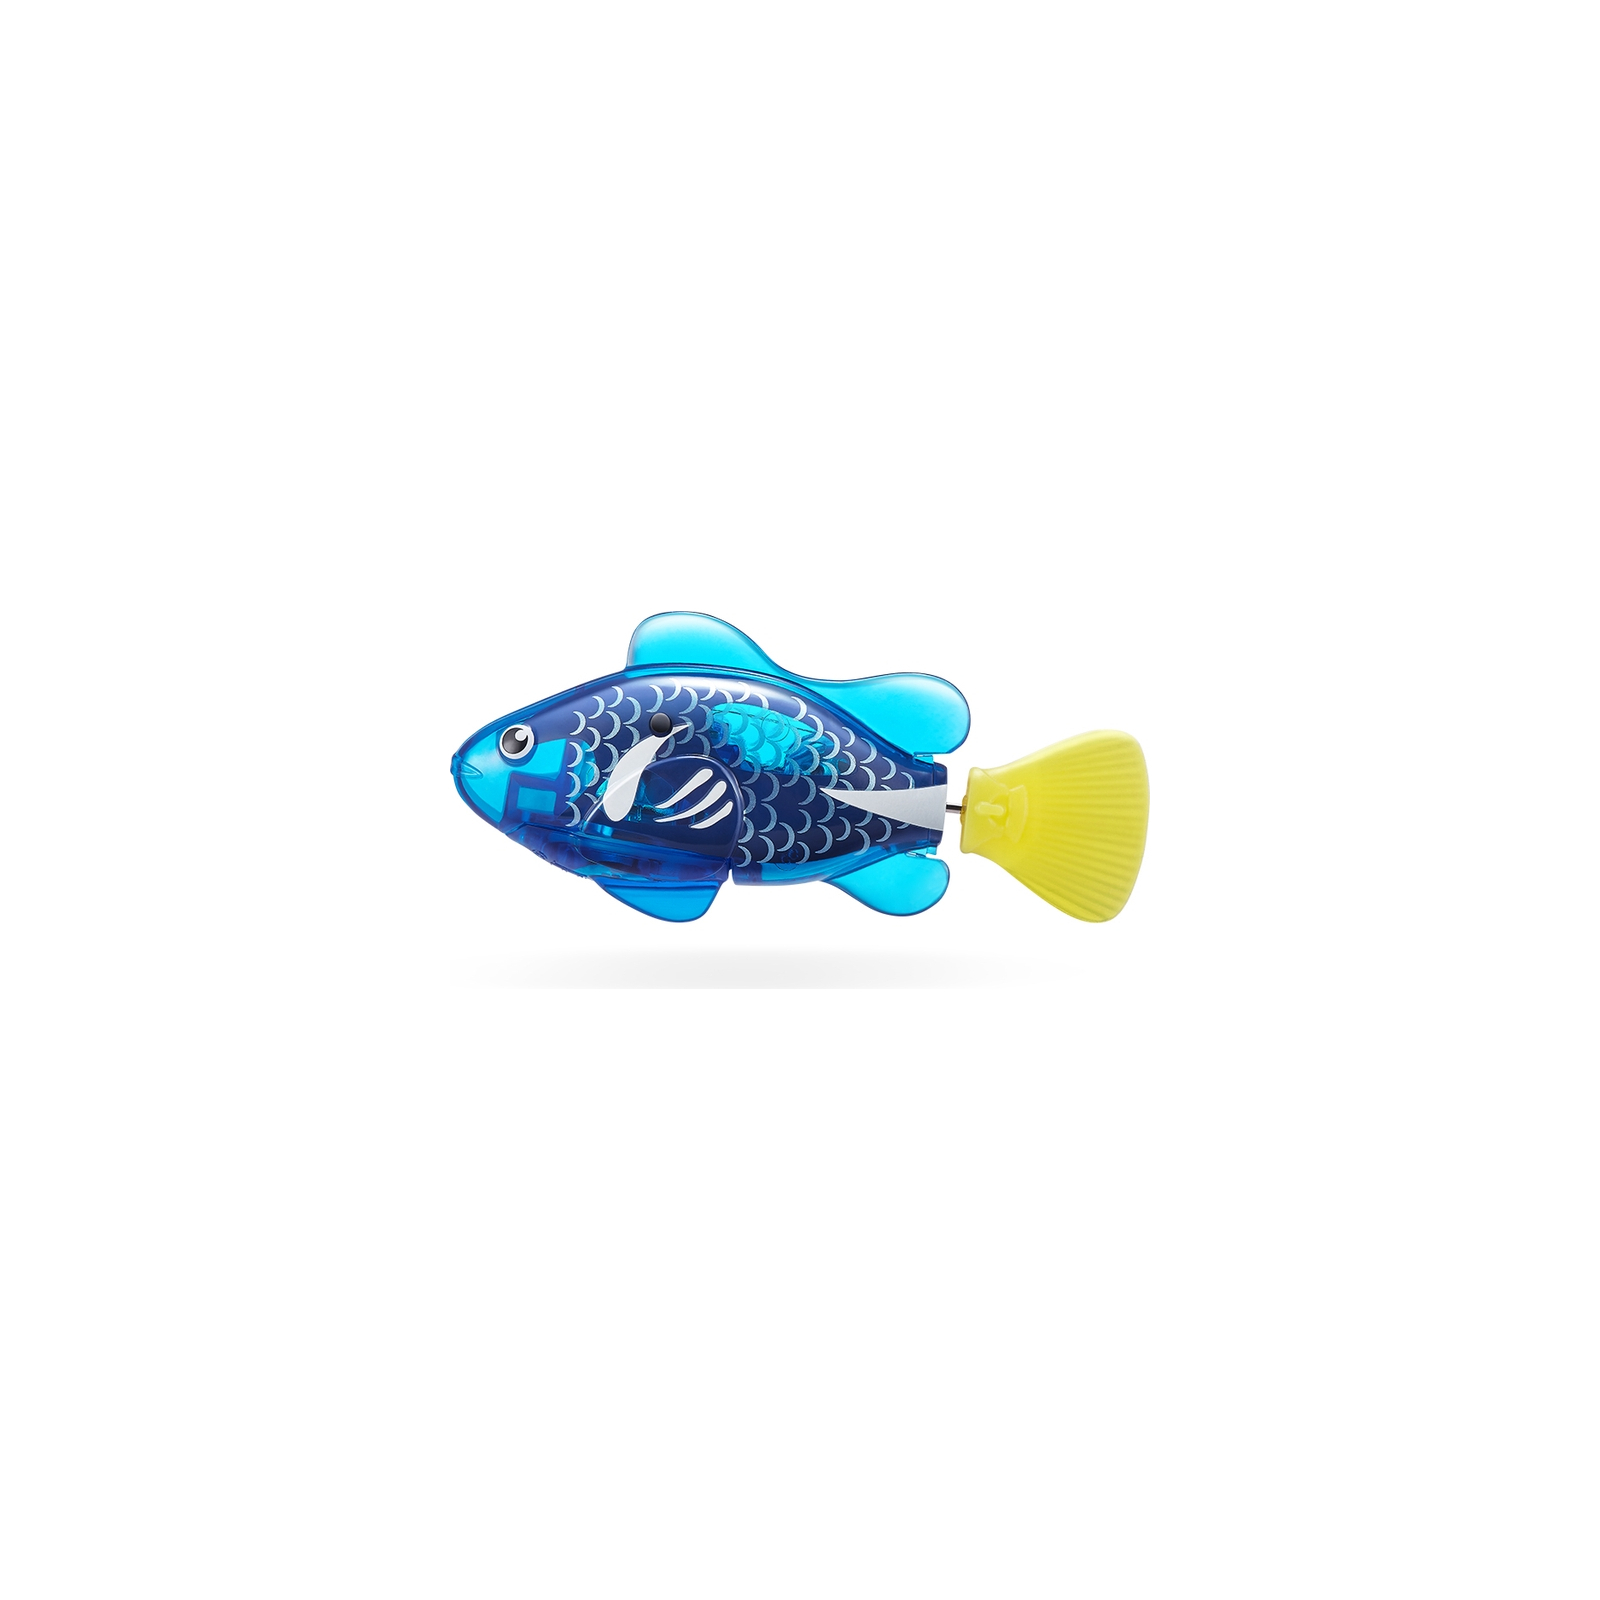 Интерактивная игрушка Pets & Robo Alive S3 - Роборыбка (синяя) (7191-4) изображение 3